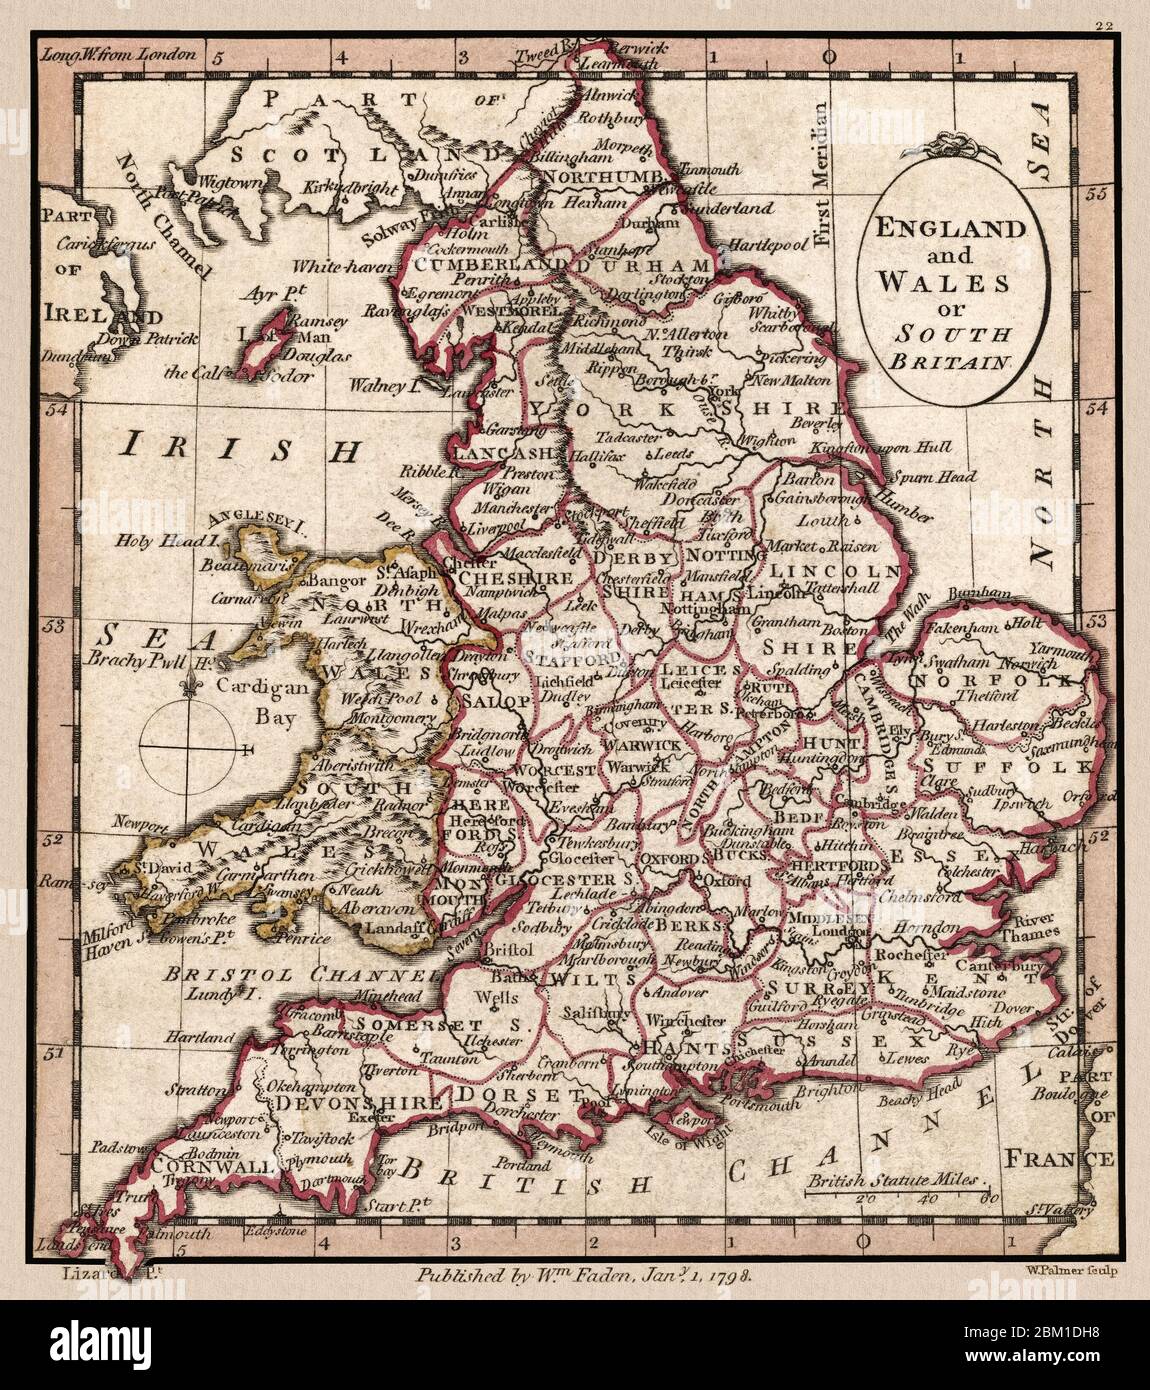 'Angleterre et pays de Galles ou Grande-Bretagne du Sud.' La carte montre les divisions géographiques vers 1798. Il s'agit d'une reproduction de carte historique très détaillée. Original d'un Atlas britannique publié par le célèbre cartographe William Faden. Banque D'Images